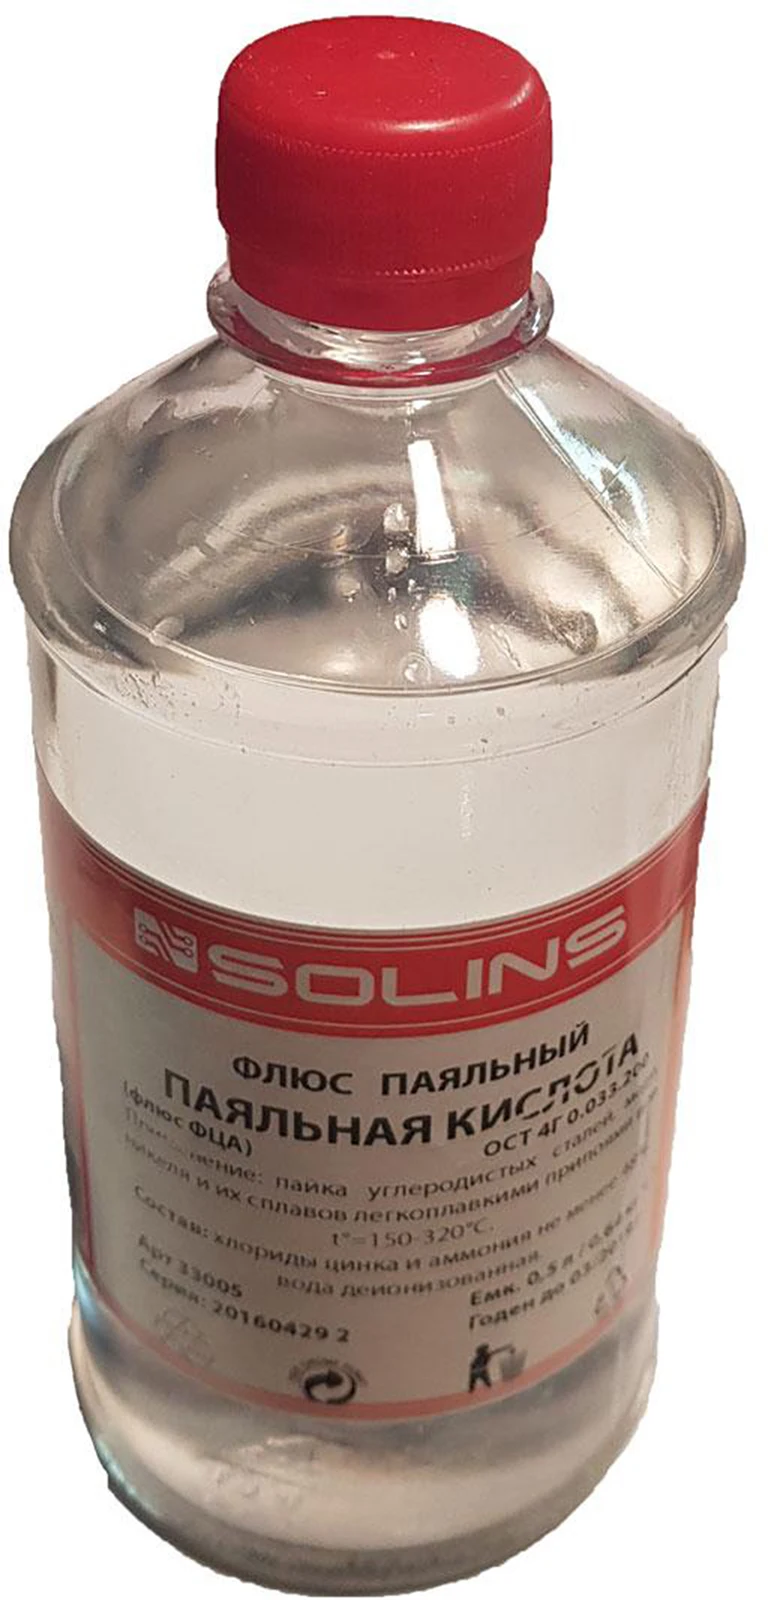 Кислота паяльная - Хлорид цинка 40%" 0 5л 625 кг | Инструменты